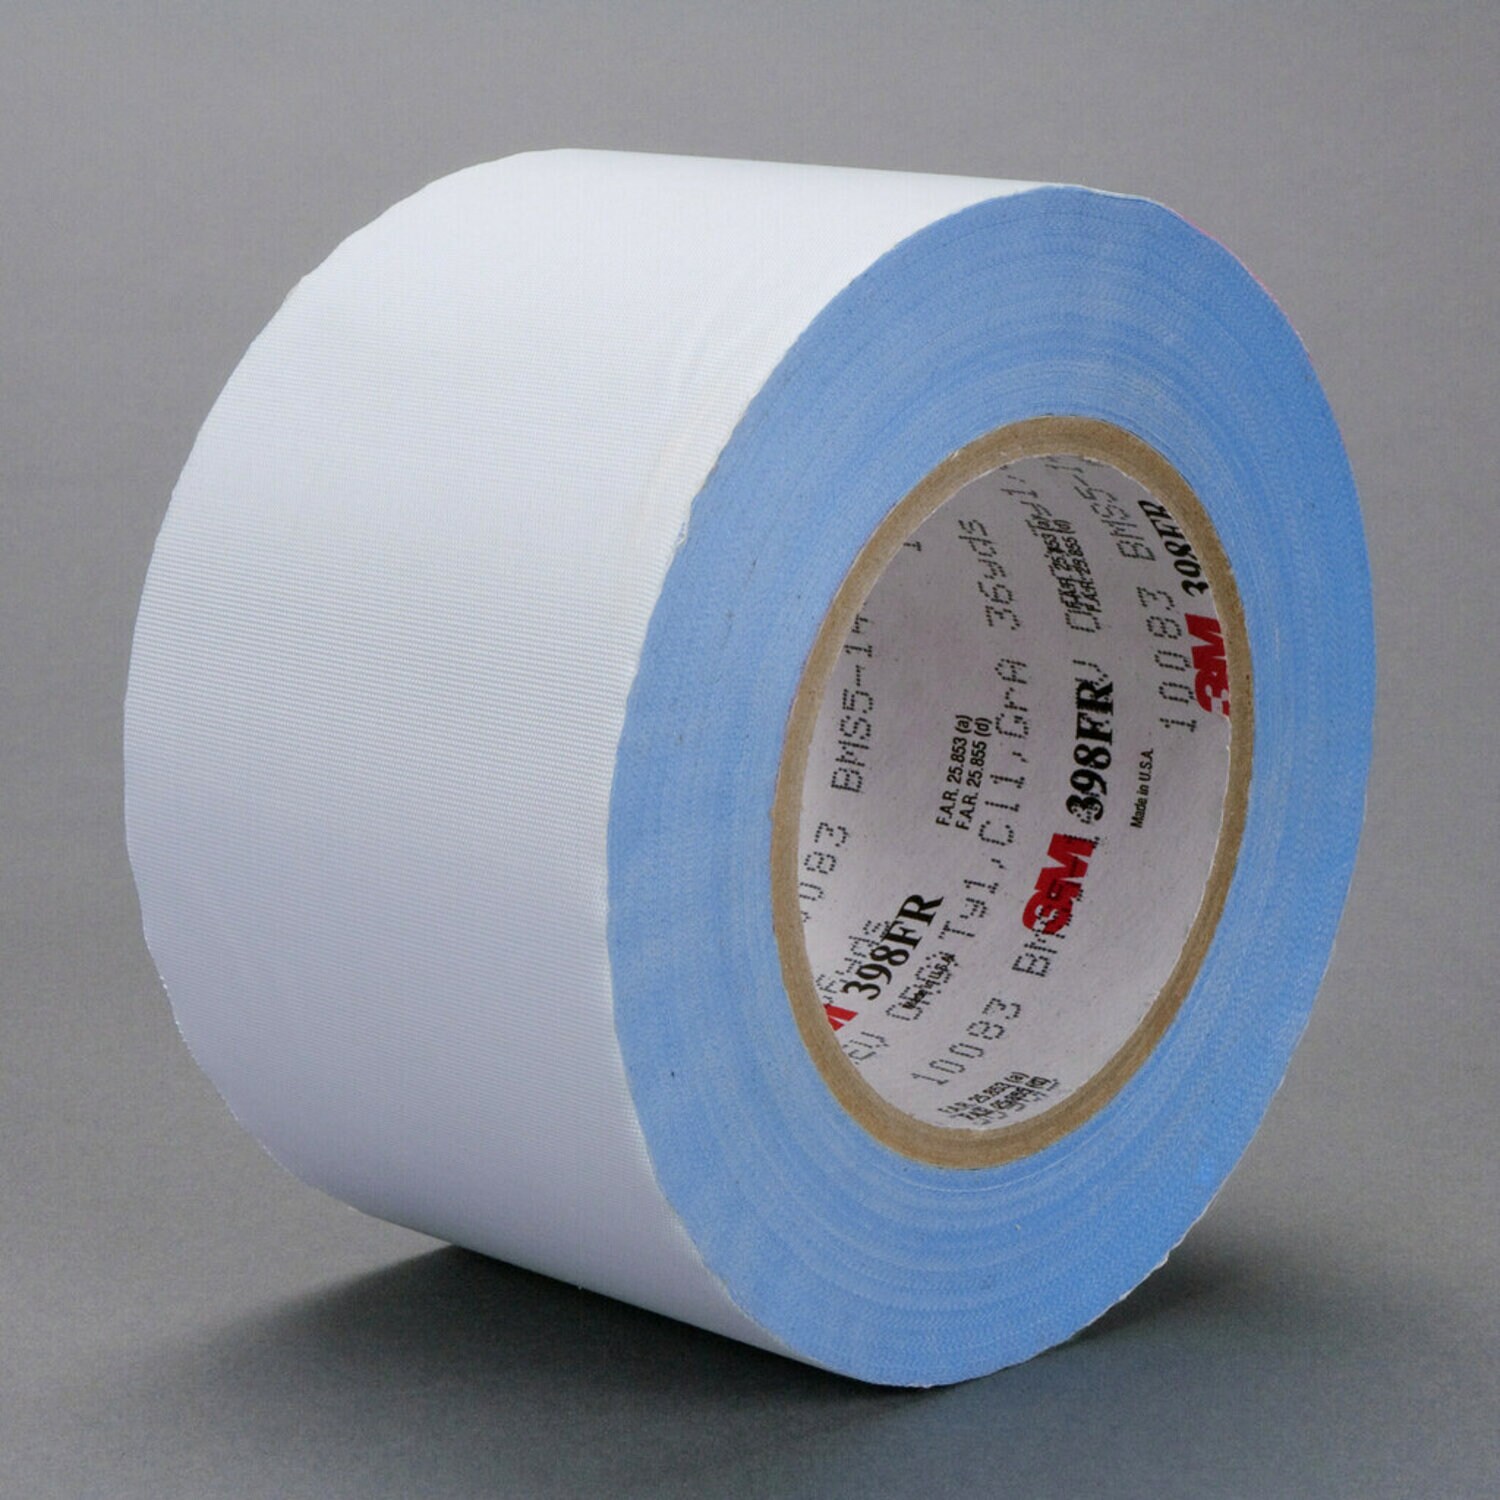 Cotton Balls Small 0.6 Gram, 8000 per Carton - Everything Safety